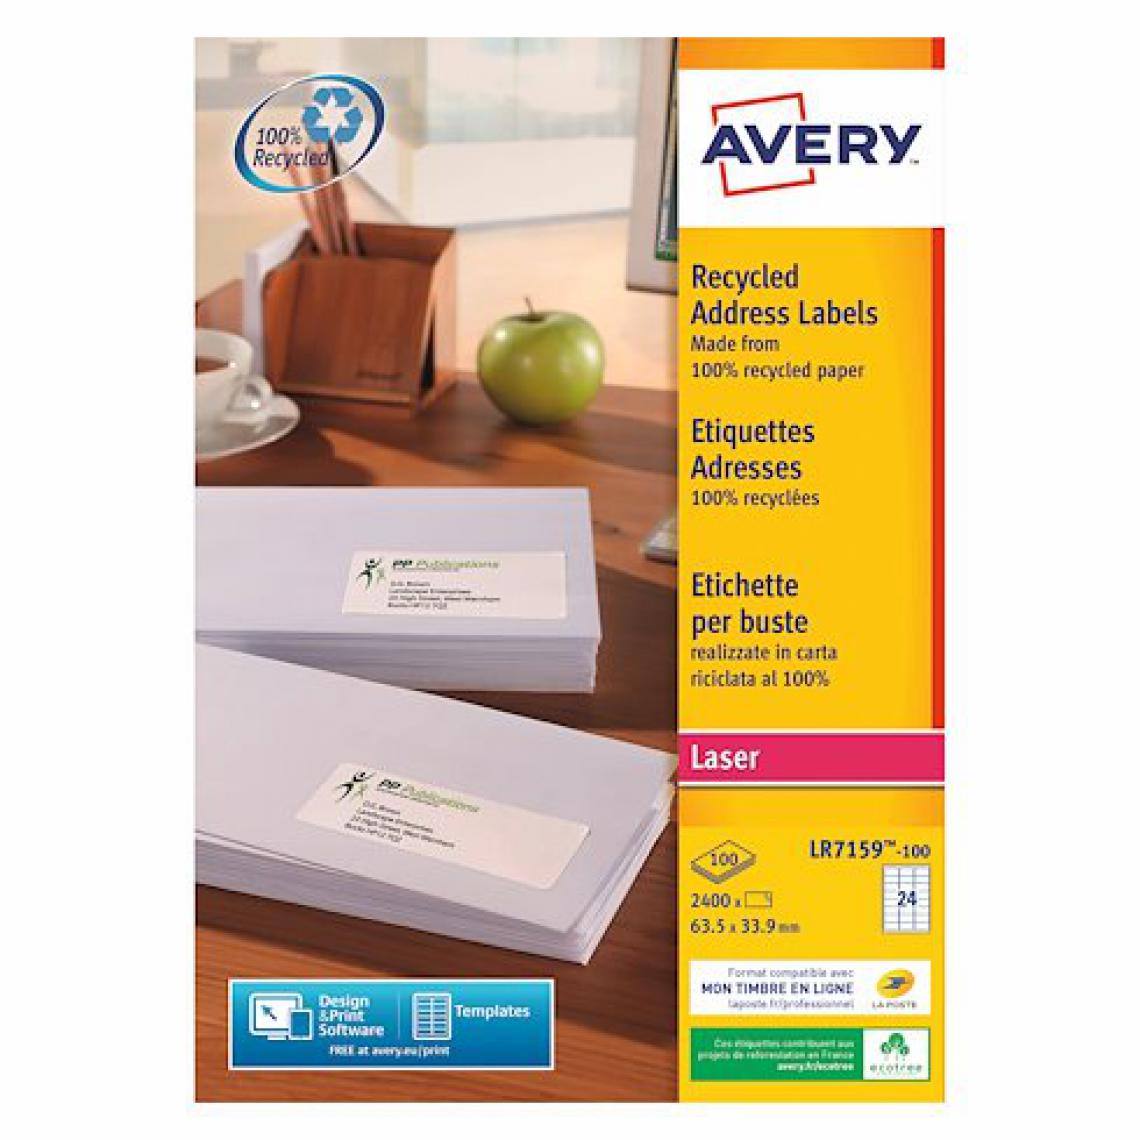 Avery - Etiquette adresse laser recyclée 63,5 x 33,9 mm Avery LR 7159-100 blanche - Boîte de 2400 - Accessoires Bureau